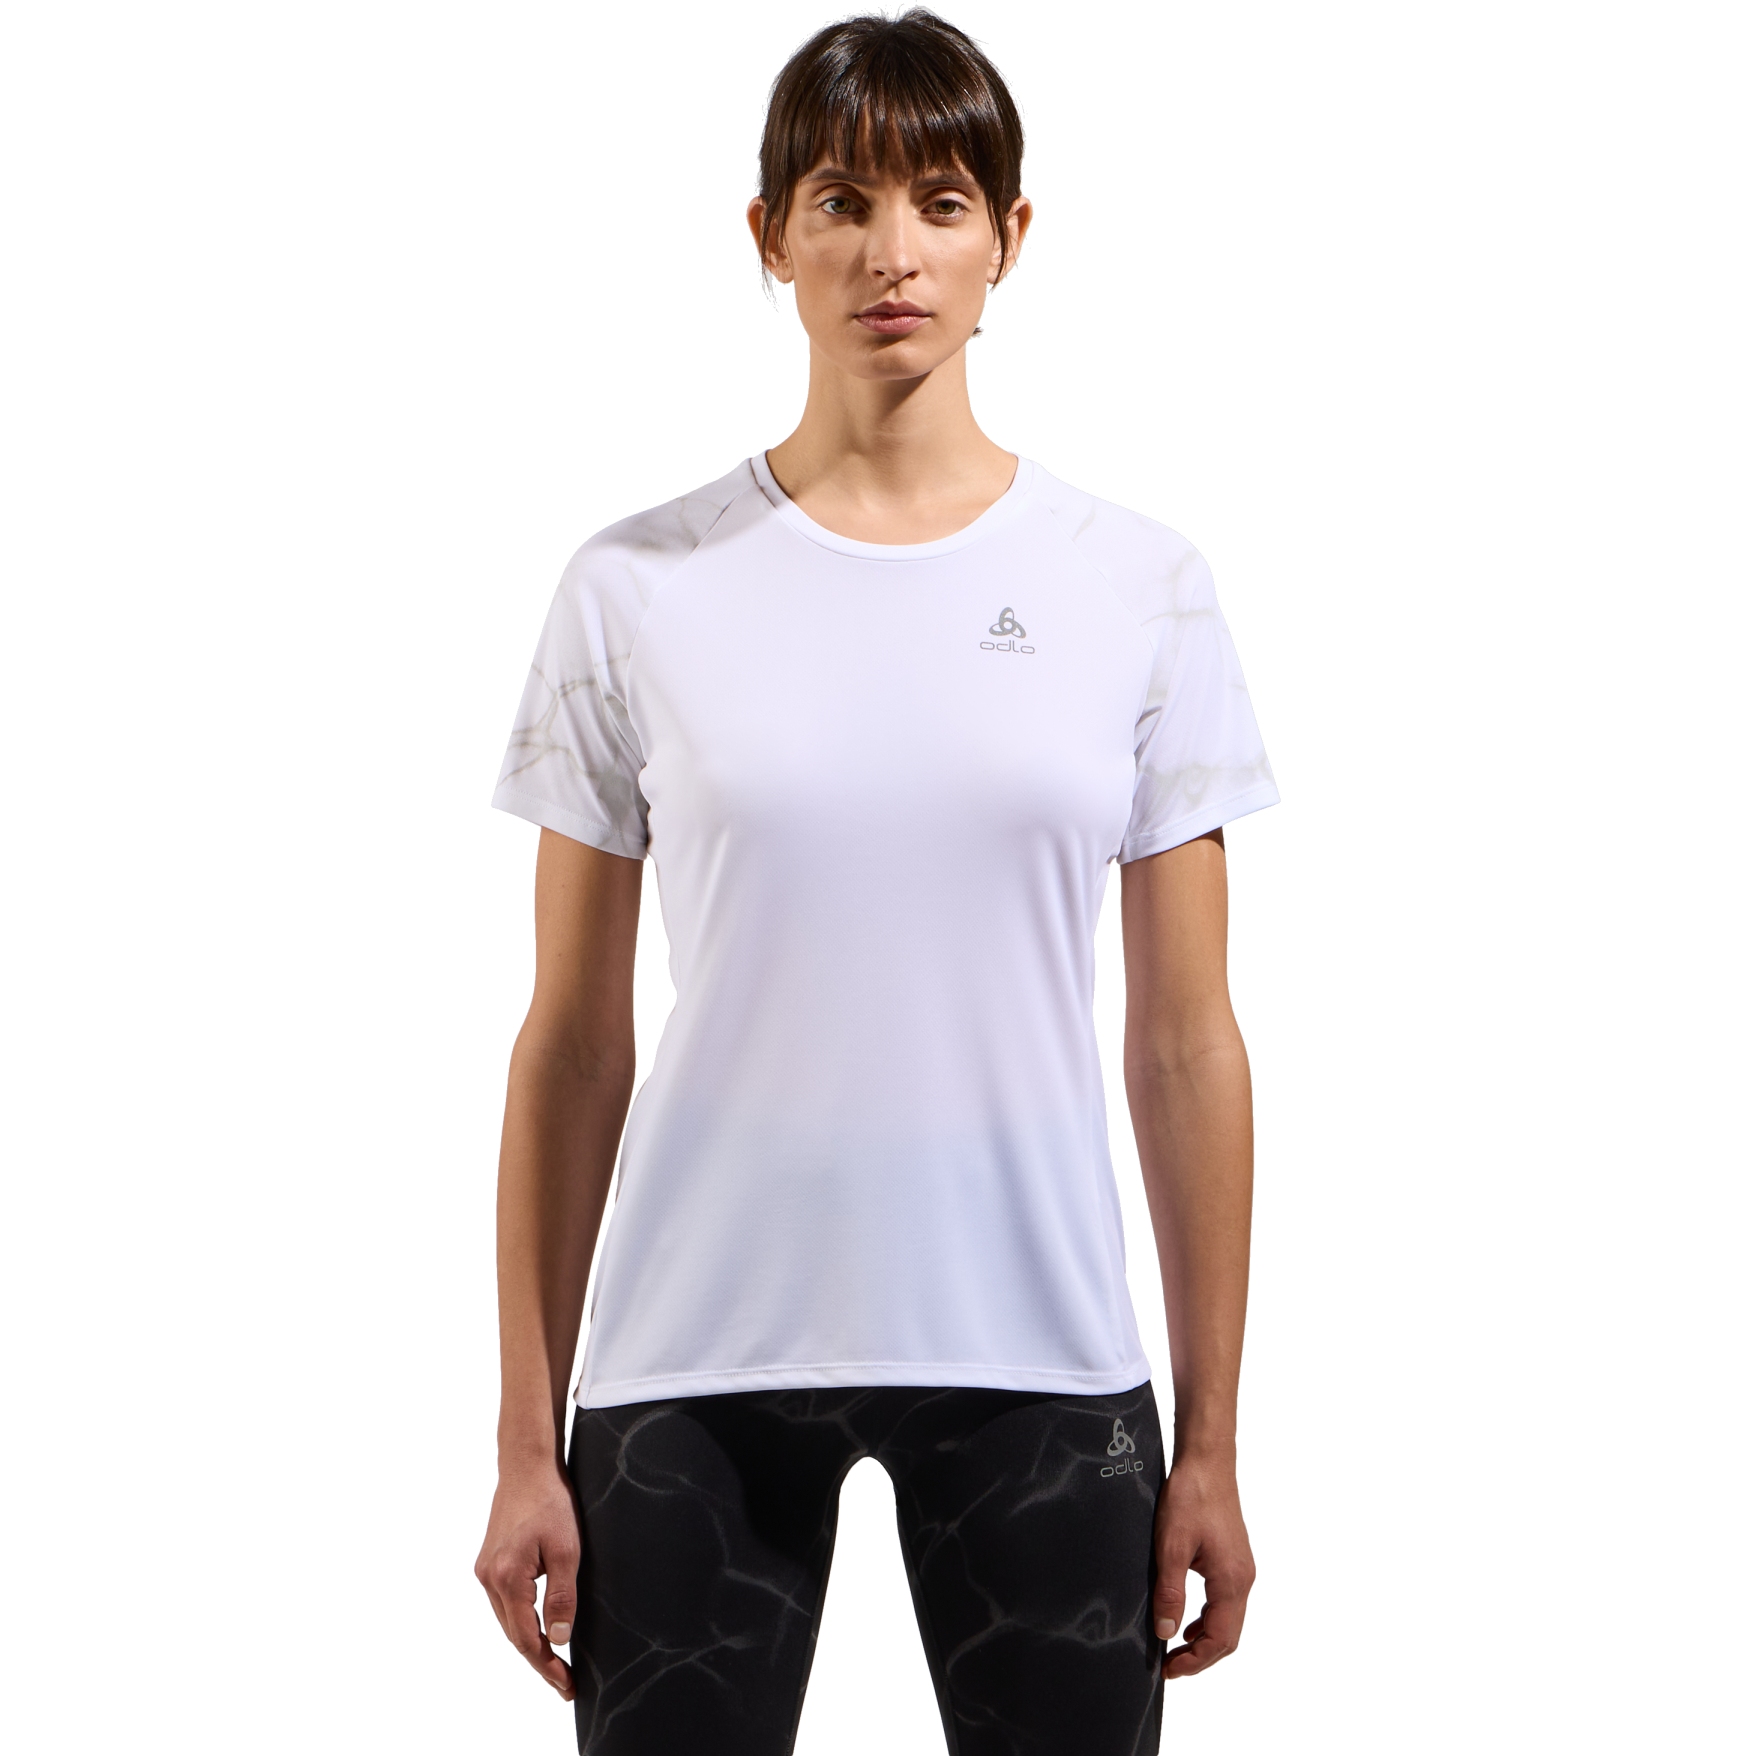 Produktbild von Odlo Essentials Laufshirt mit Print Damen - weiß